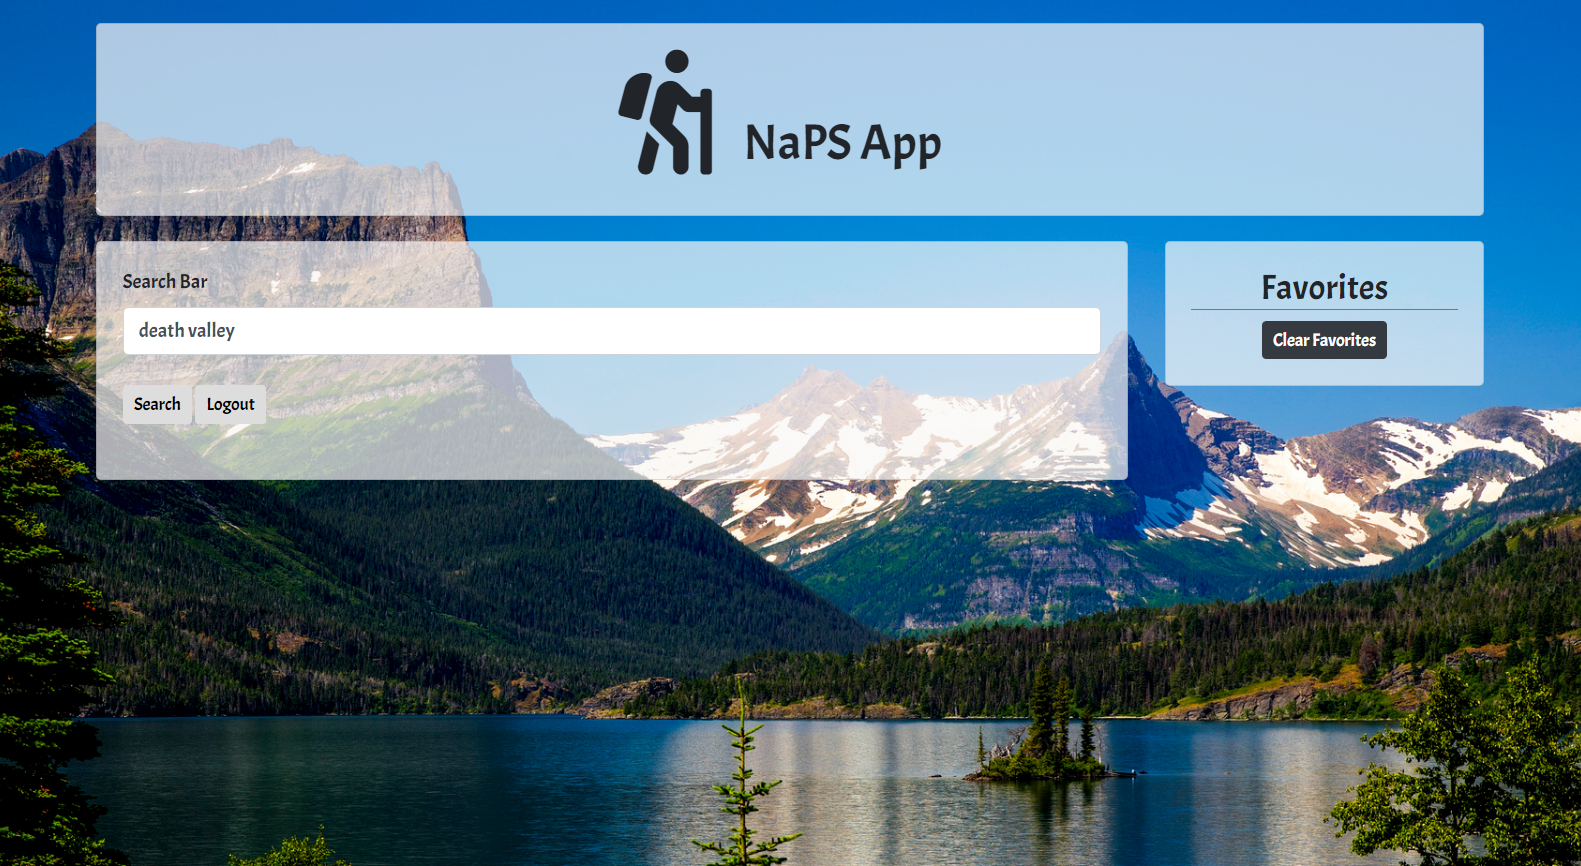 NaPS App